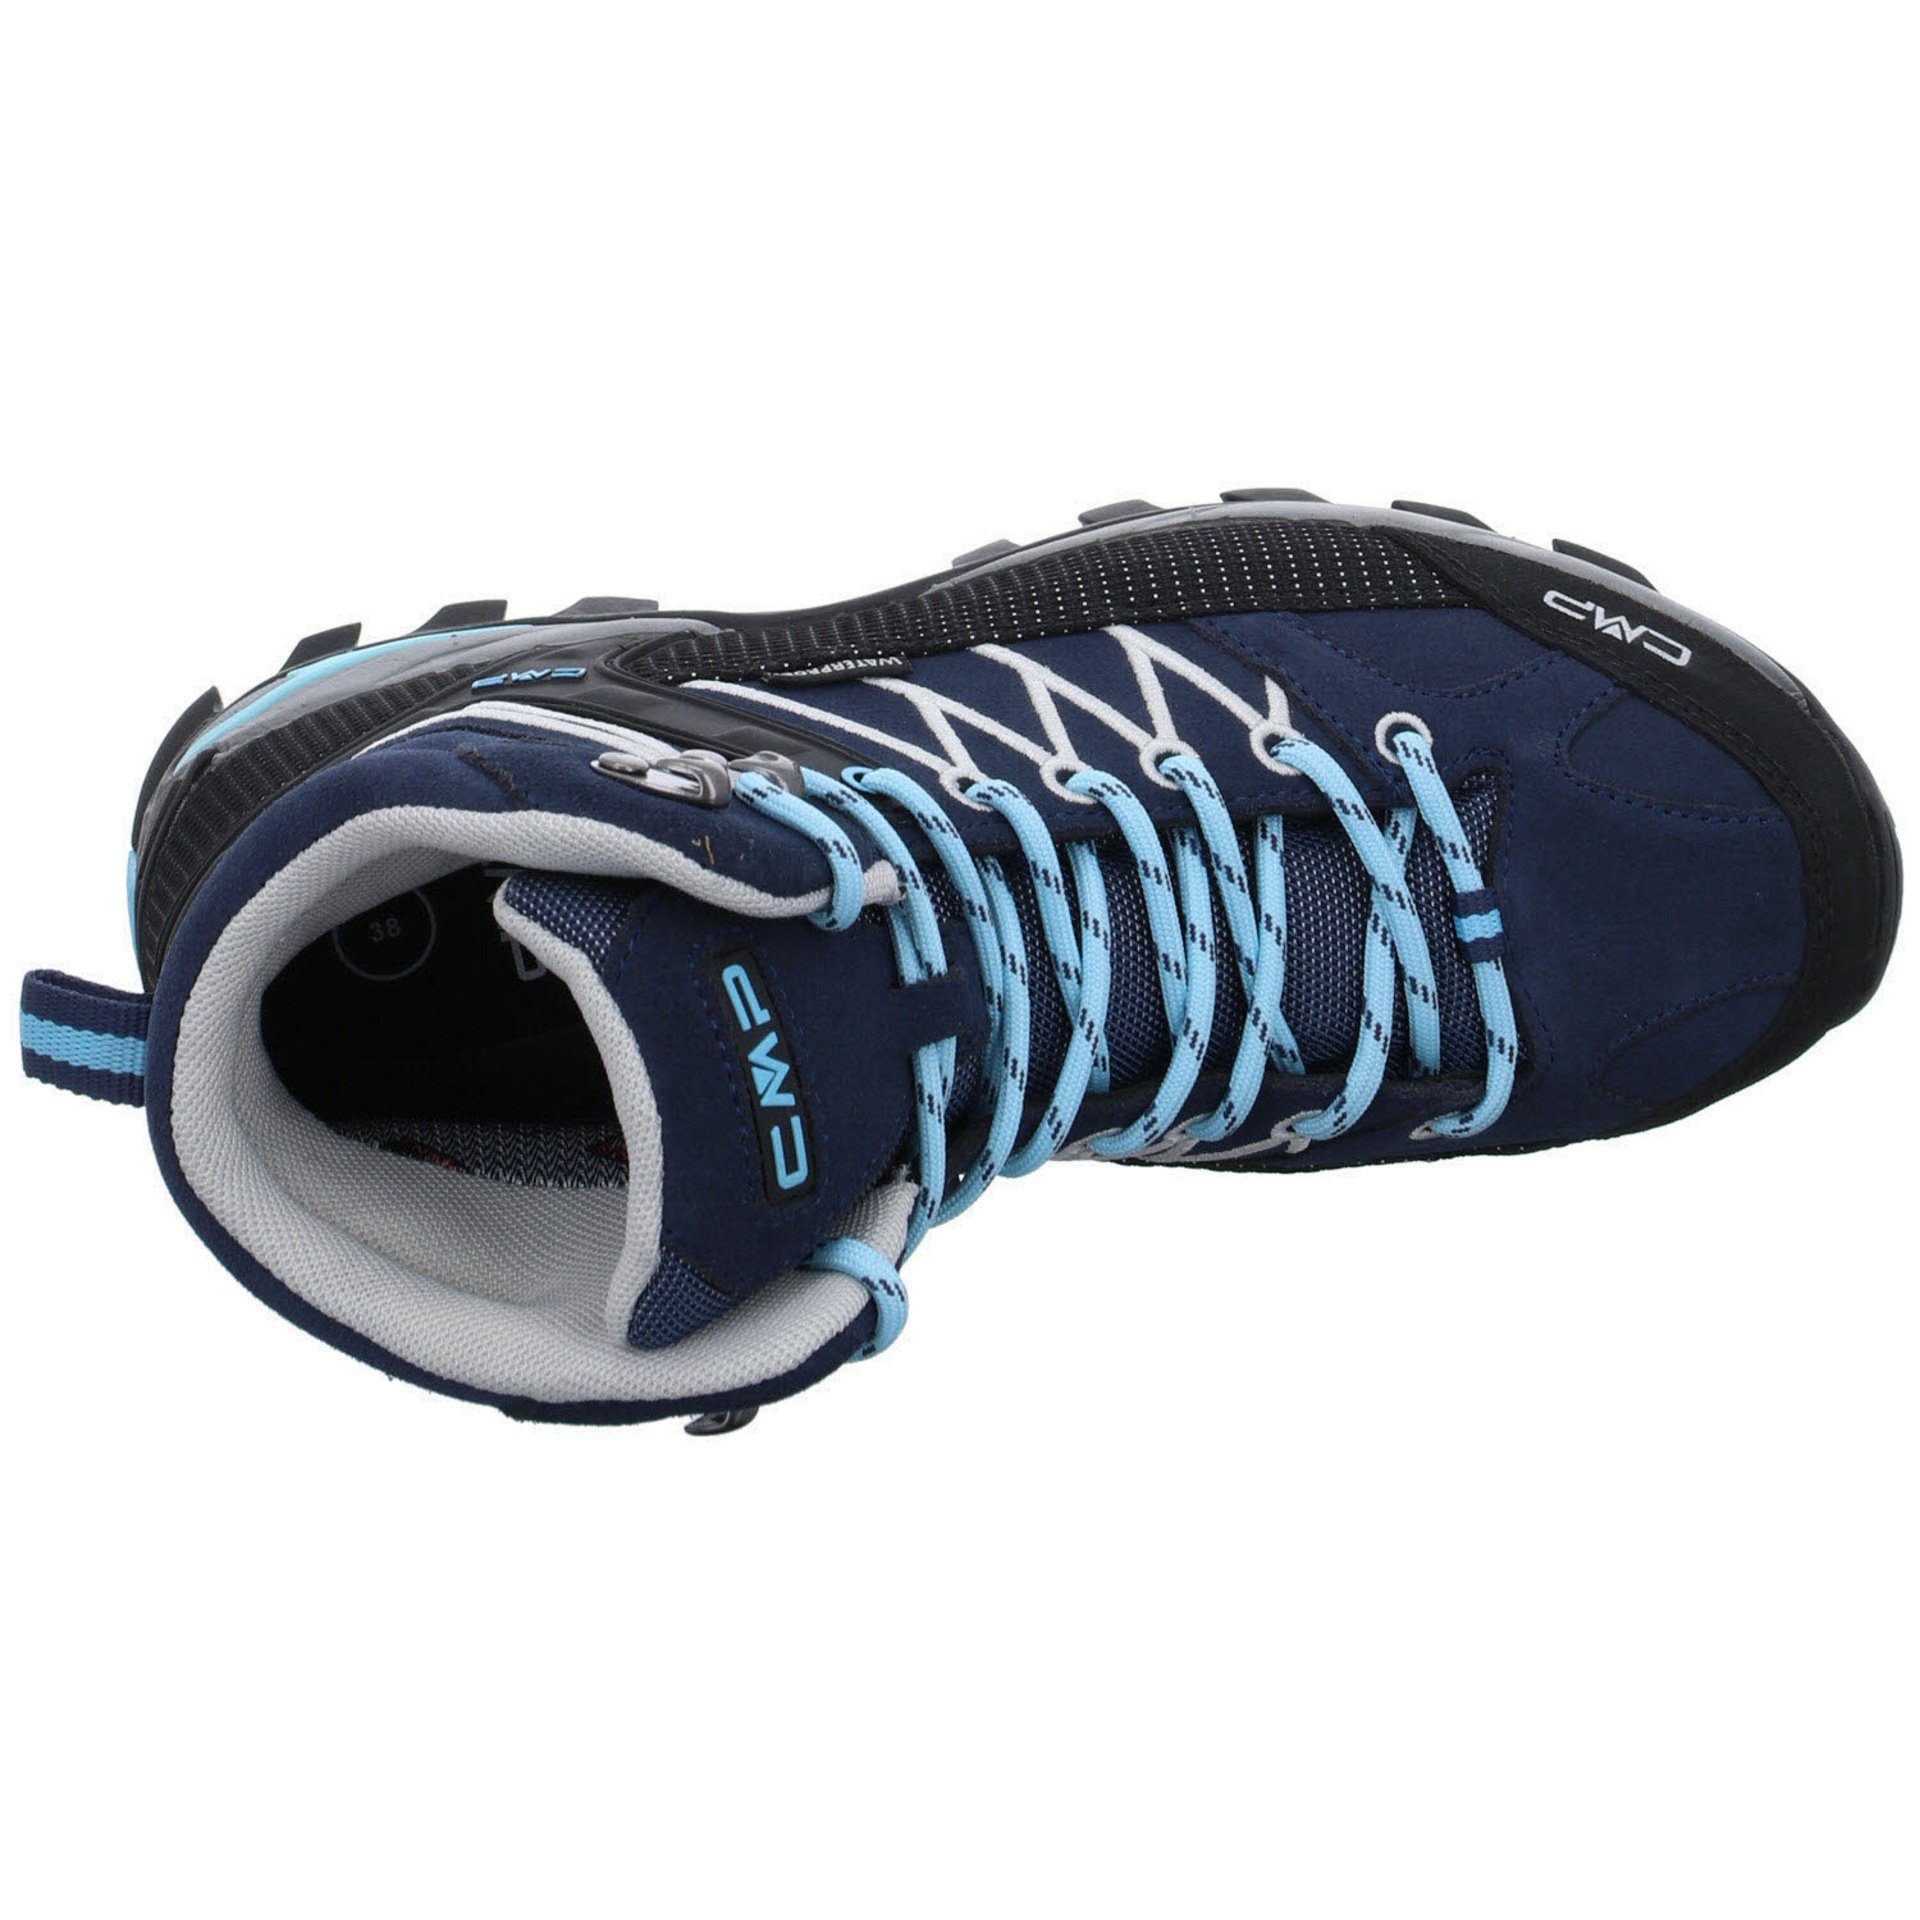 Mid Outdoorschuh Outdoor CAMPAGNOLO blau Outdoorschuh Schuhe Leder-/Textilkombination Rigel Damen CMP